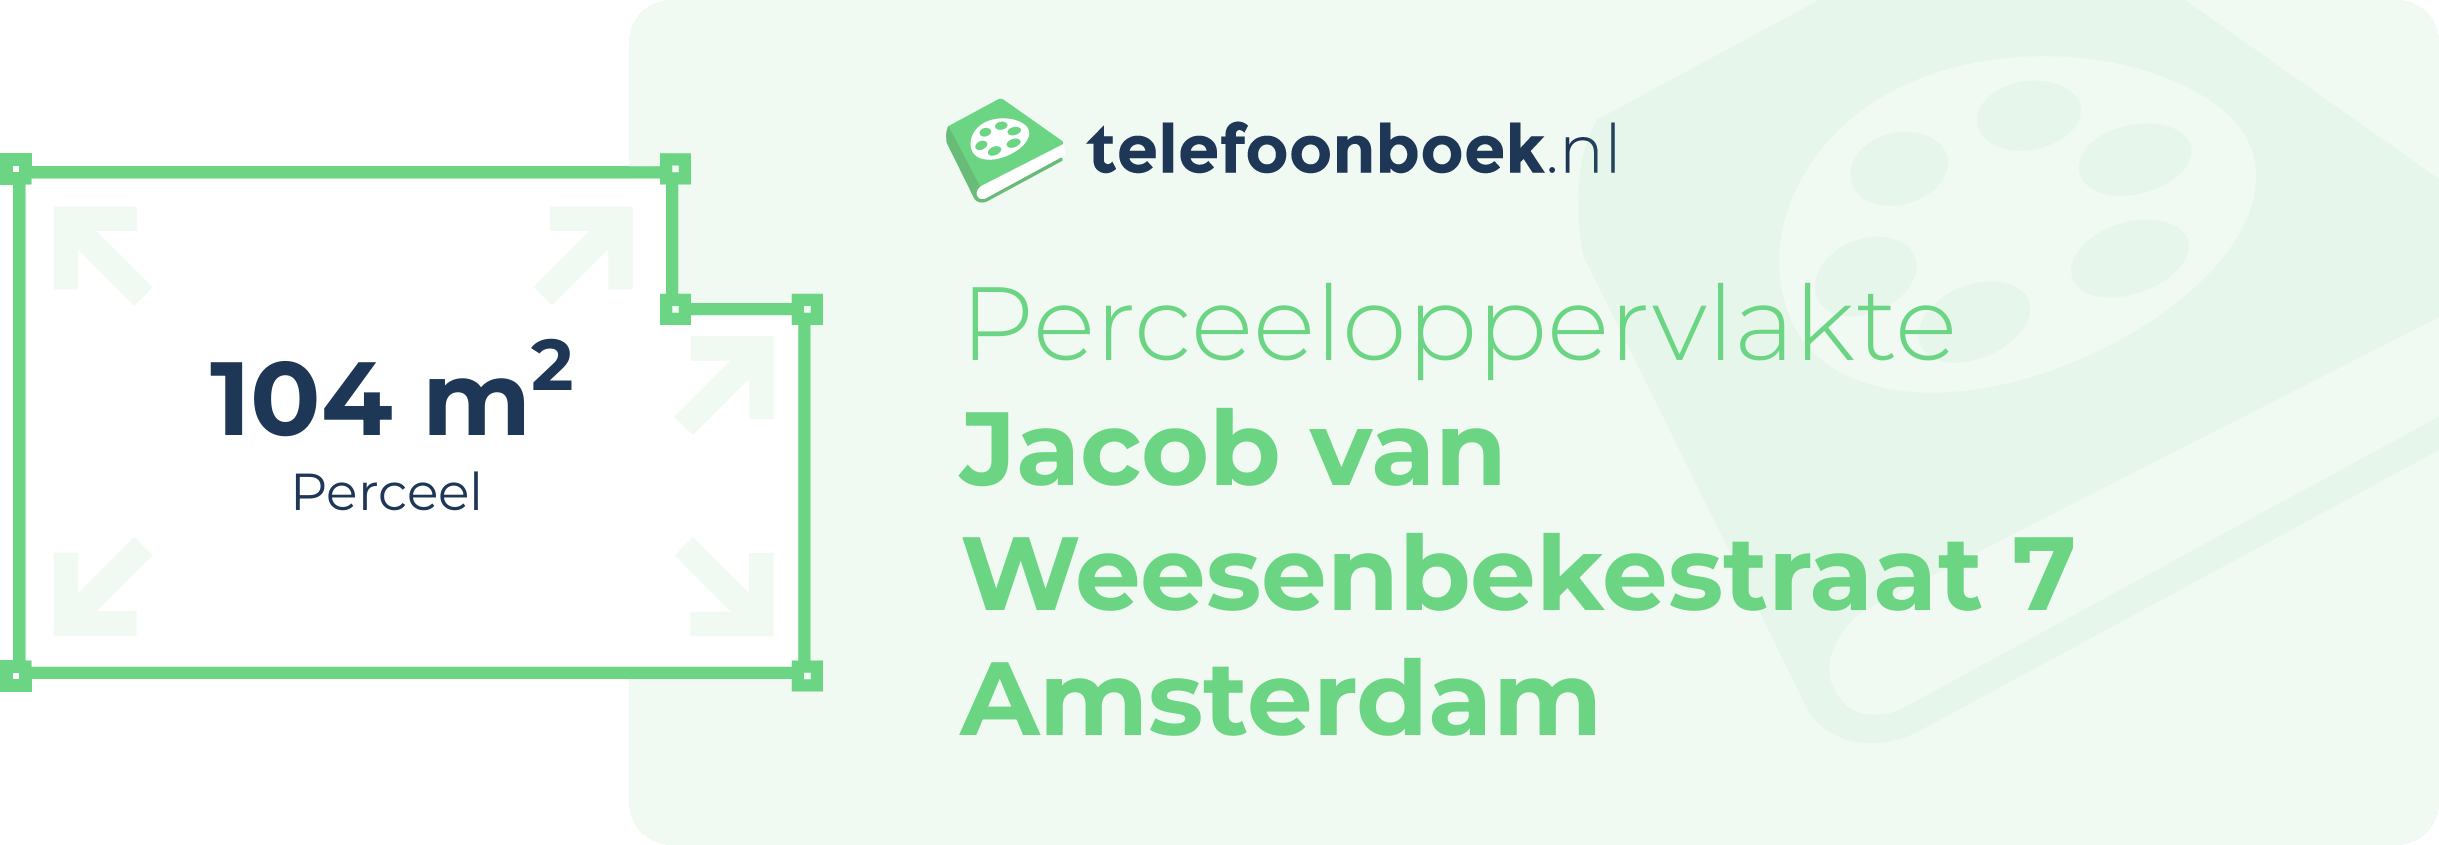 Perceeloppervlakte Jacob Van Weesenbekestraat 7 Amsterdam